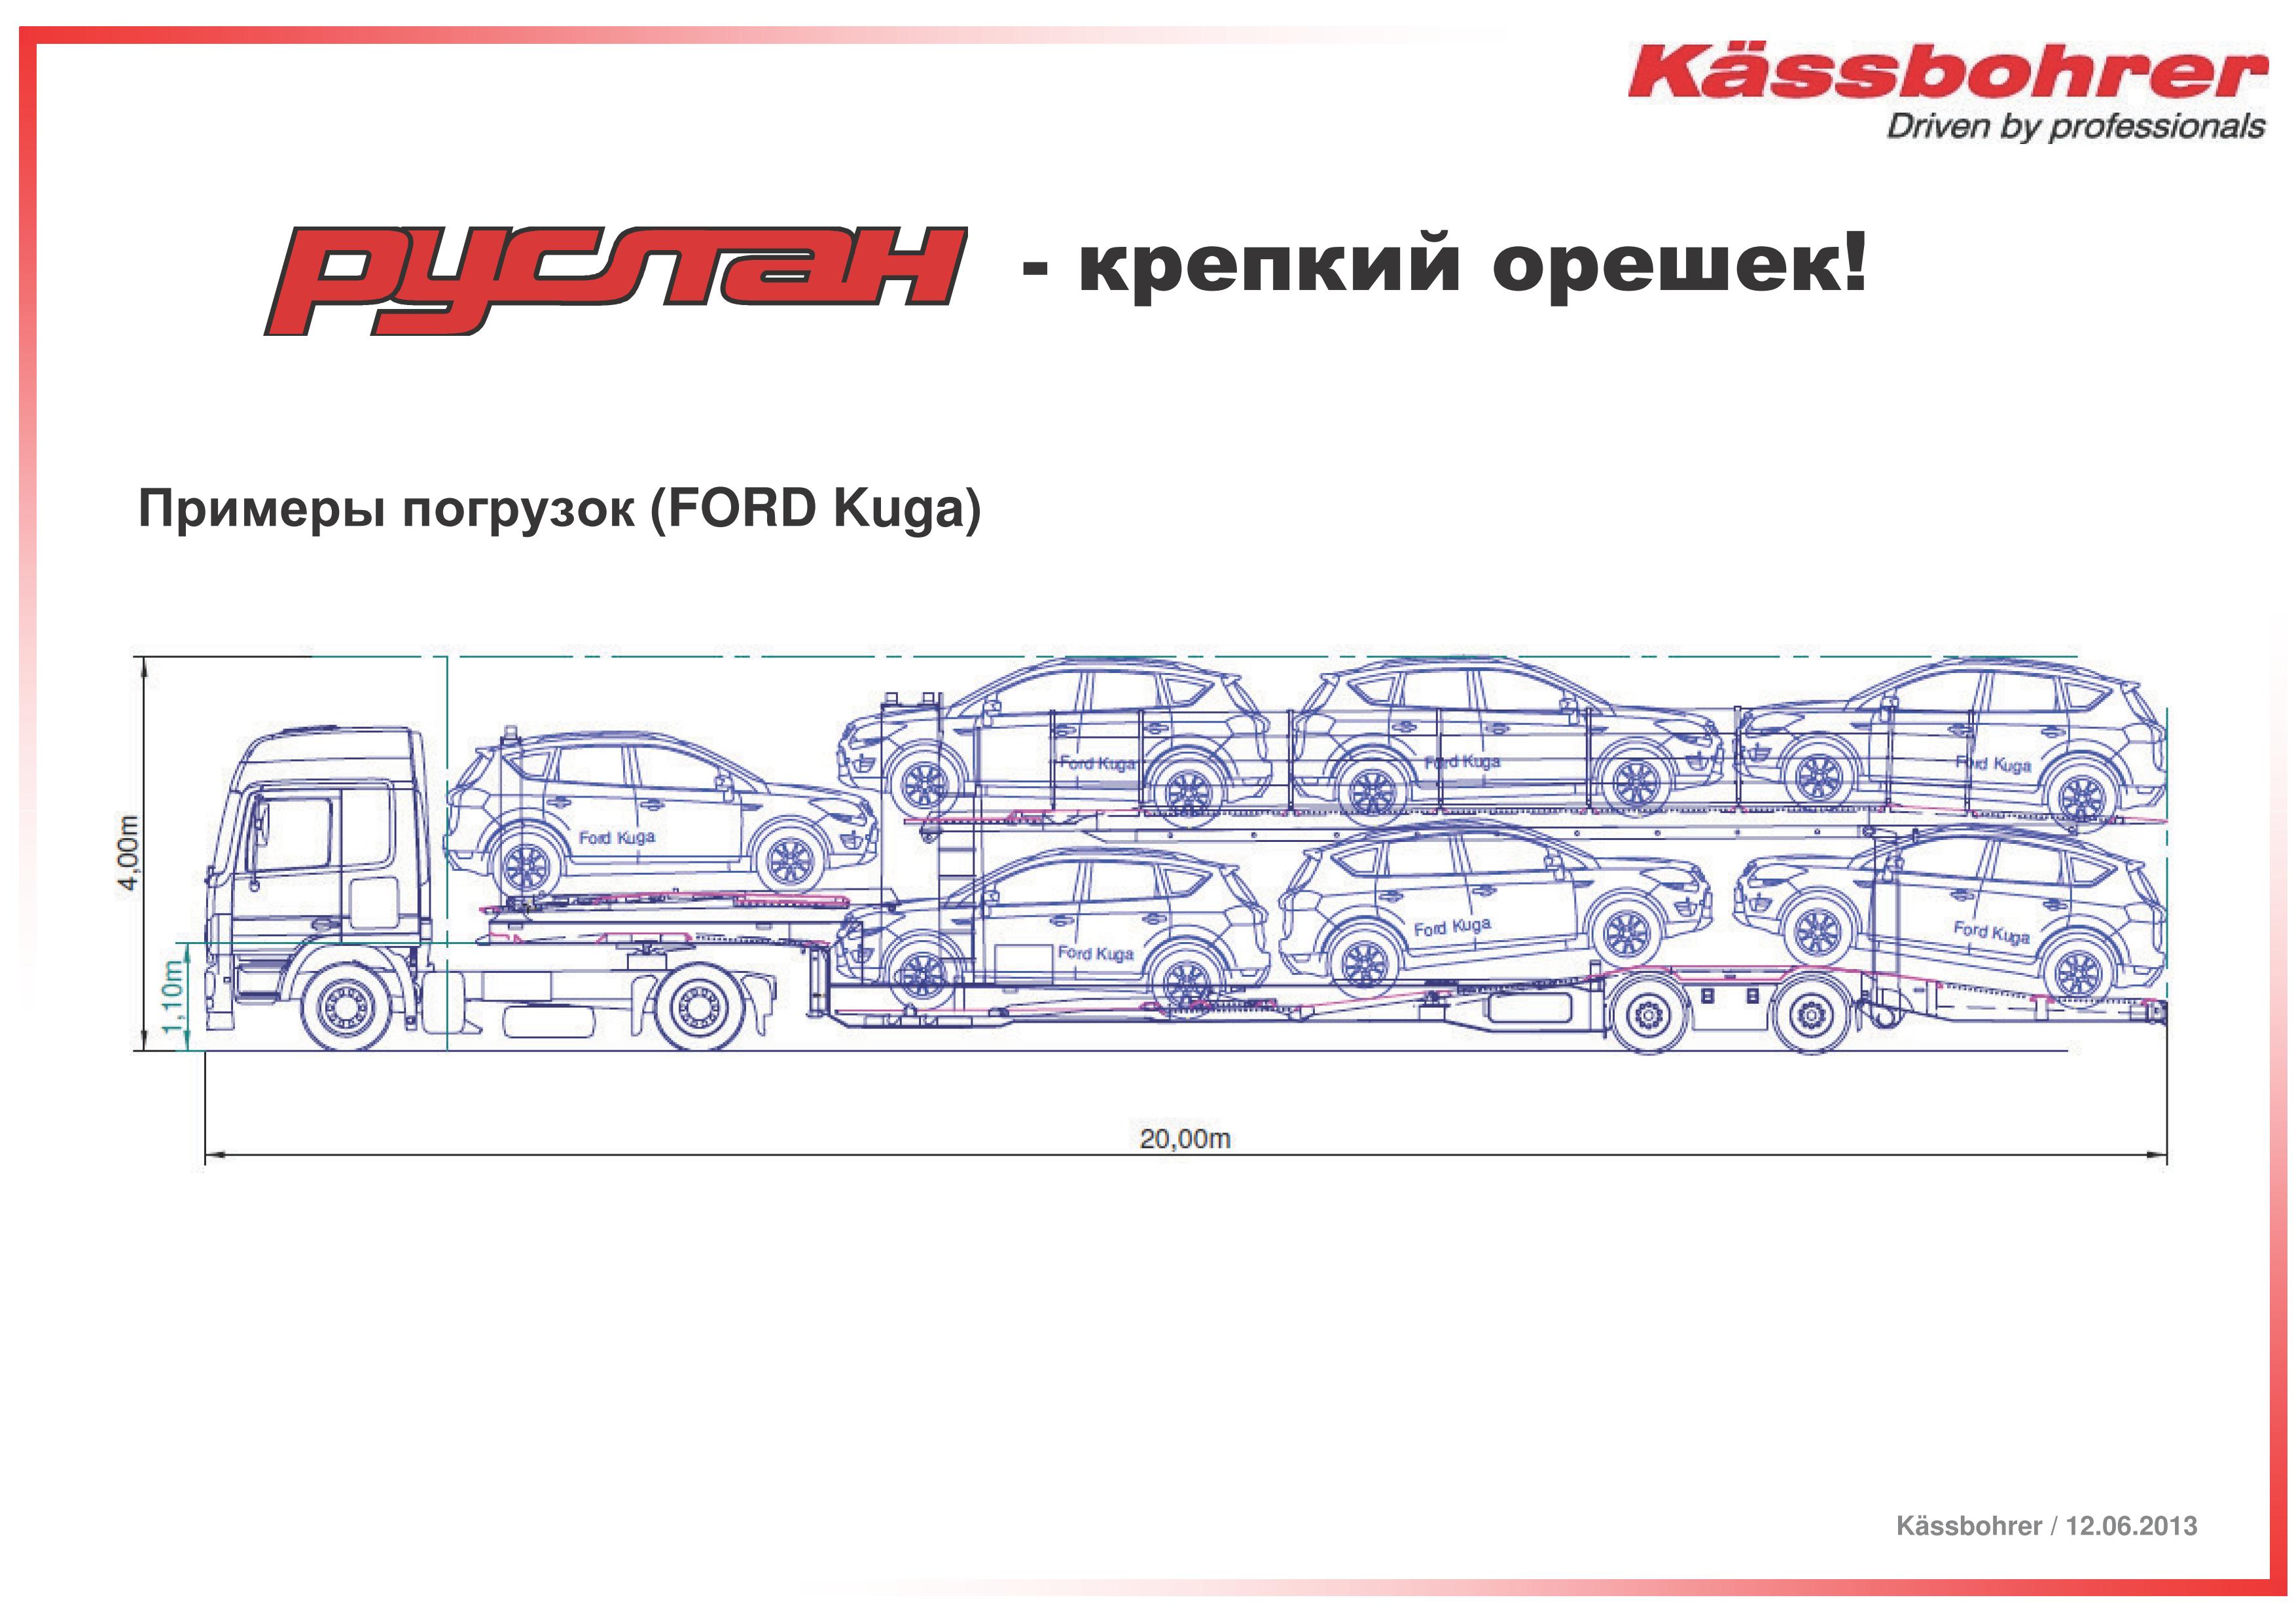 Спецавтолэнд - Полуприцепы-щеповозы с подвижным полом  – Kassbohrer полуприцеп-автовоз модель RUSLAN, НОВЫЙ